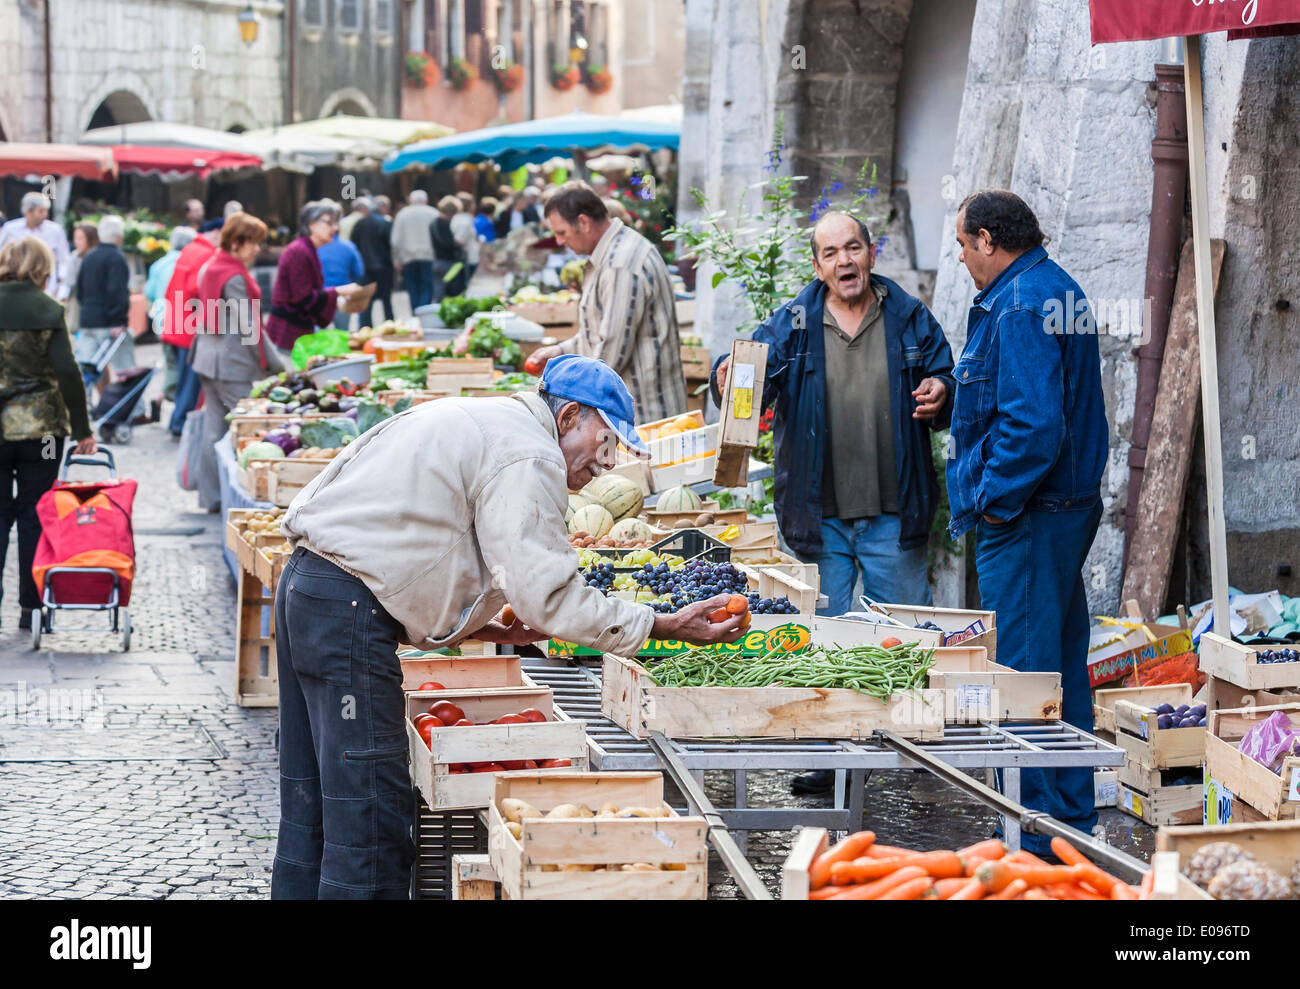 Stile di vita: Un anziano francese ispeziona i prodotti in una trafficata bancarella locale di mercato ortofrutticolo all'aperto ad Annecy, in Francia, mentre gli stallholder parlano Foto Stock